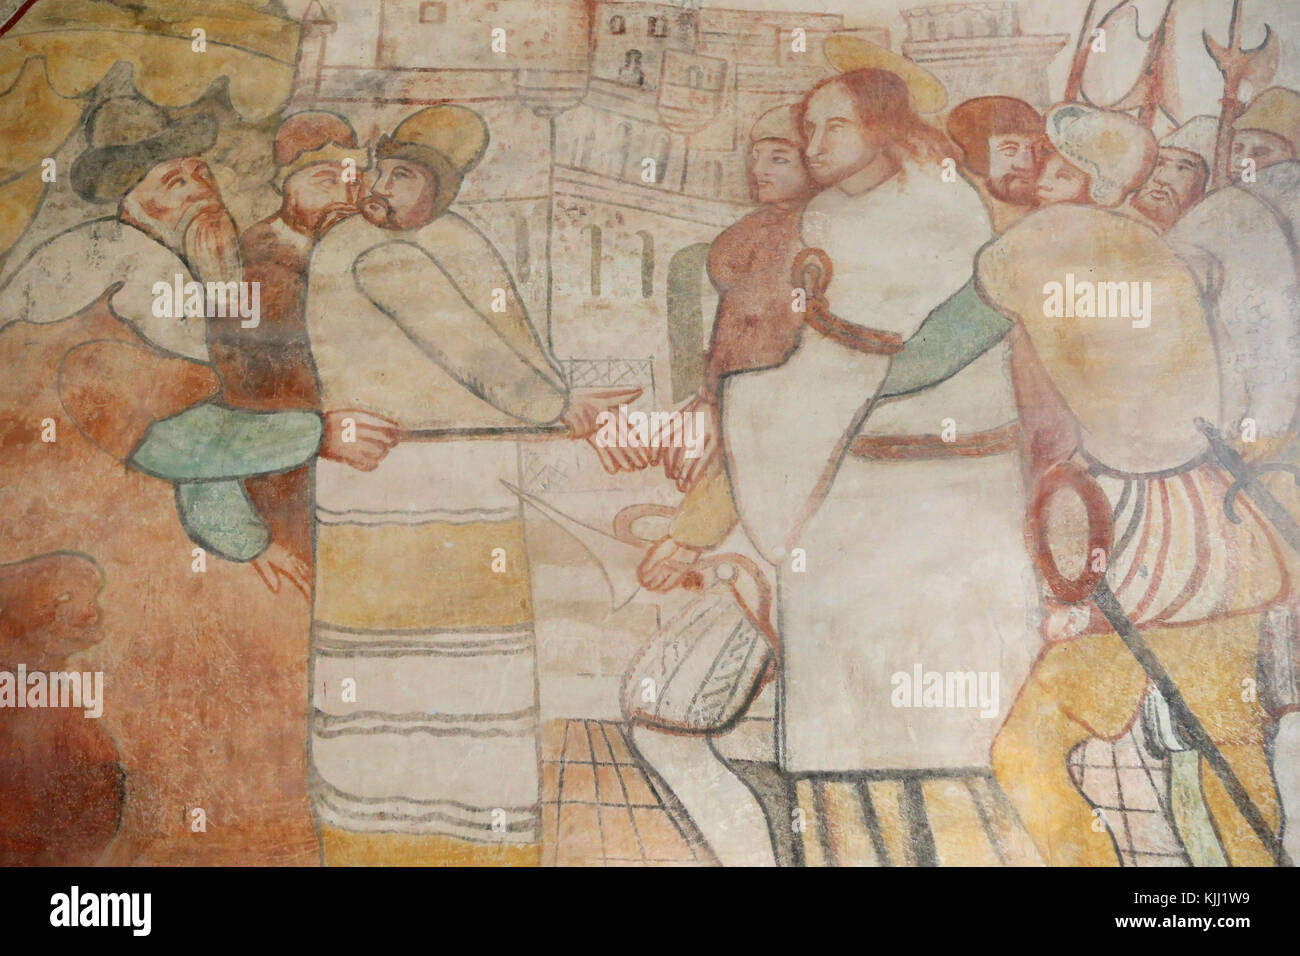 Vault de Lugny Kirche. Wandmalerei aus dem 16. Jahrhundert. Christus in seinem Leiden. Jesus verhaftet. Frankreich. Stockfoto